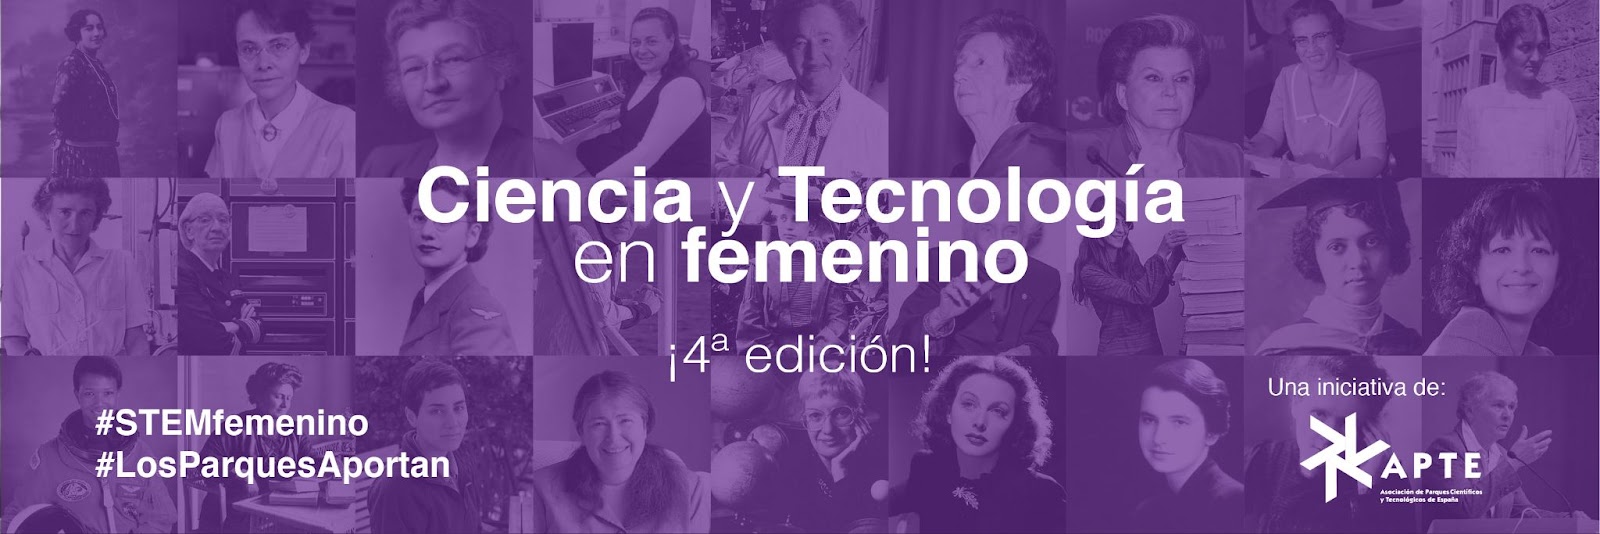 Ciencia Y Tecnolog A En Femenino Recursos Online Para Ingl S Cient Fico Y Tecnol Gico